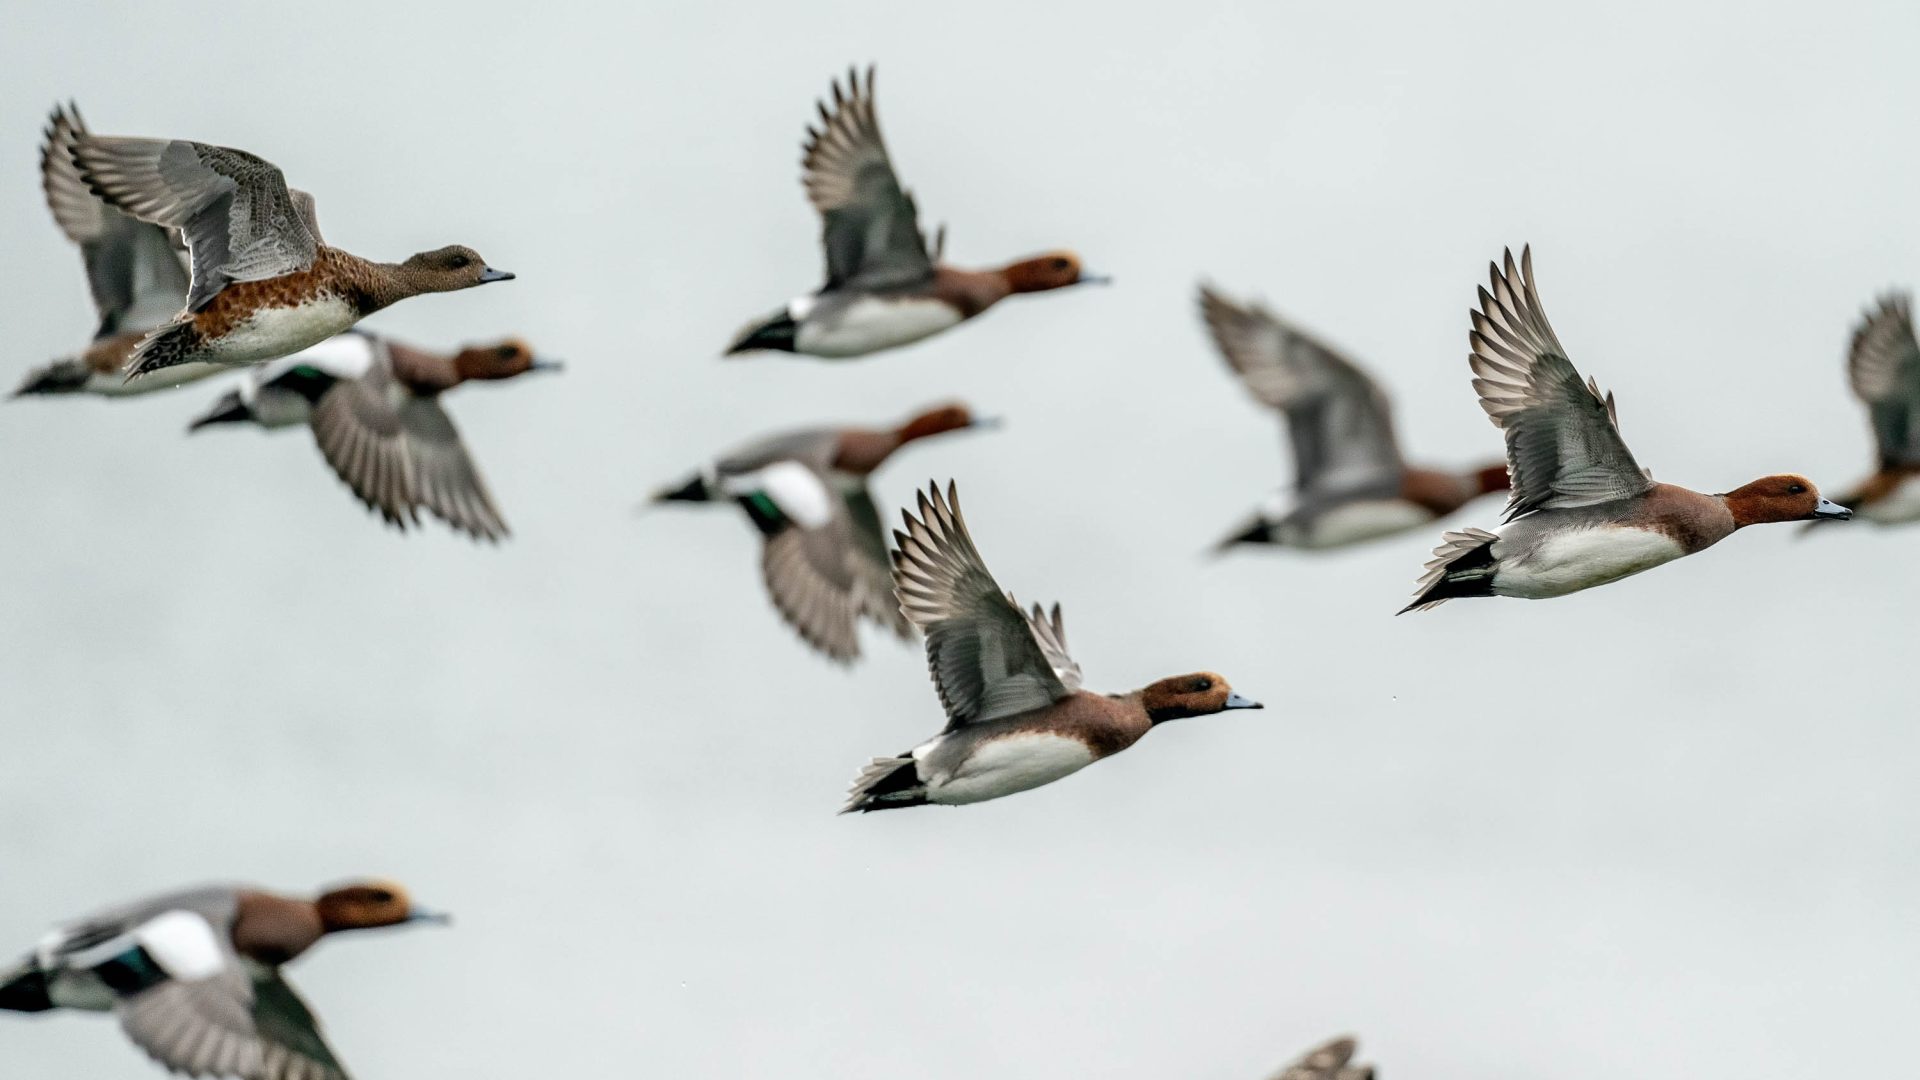 Widgeons in flight.